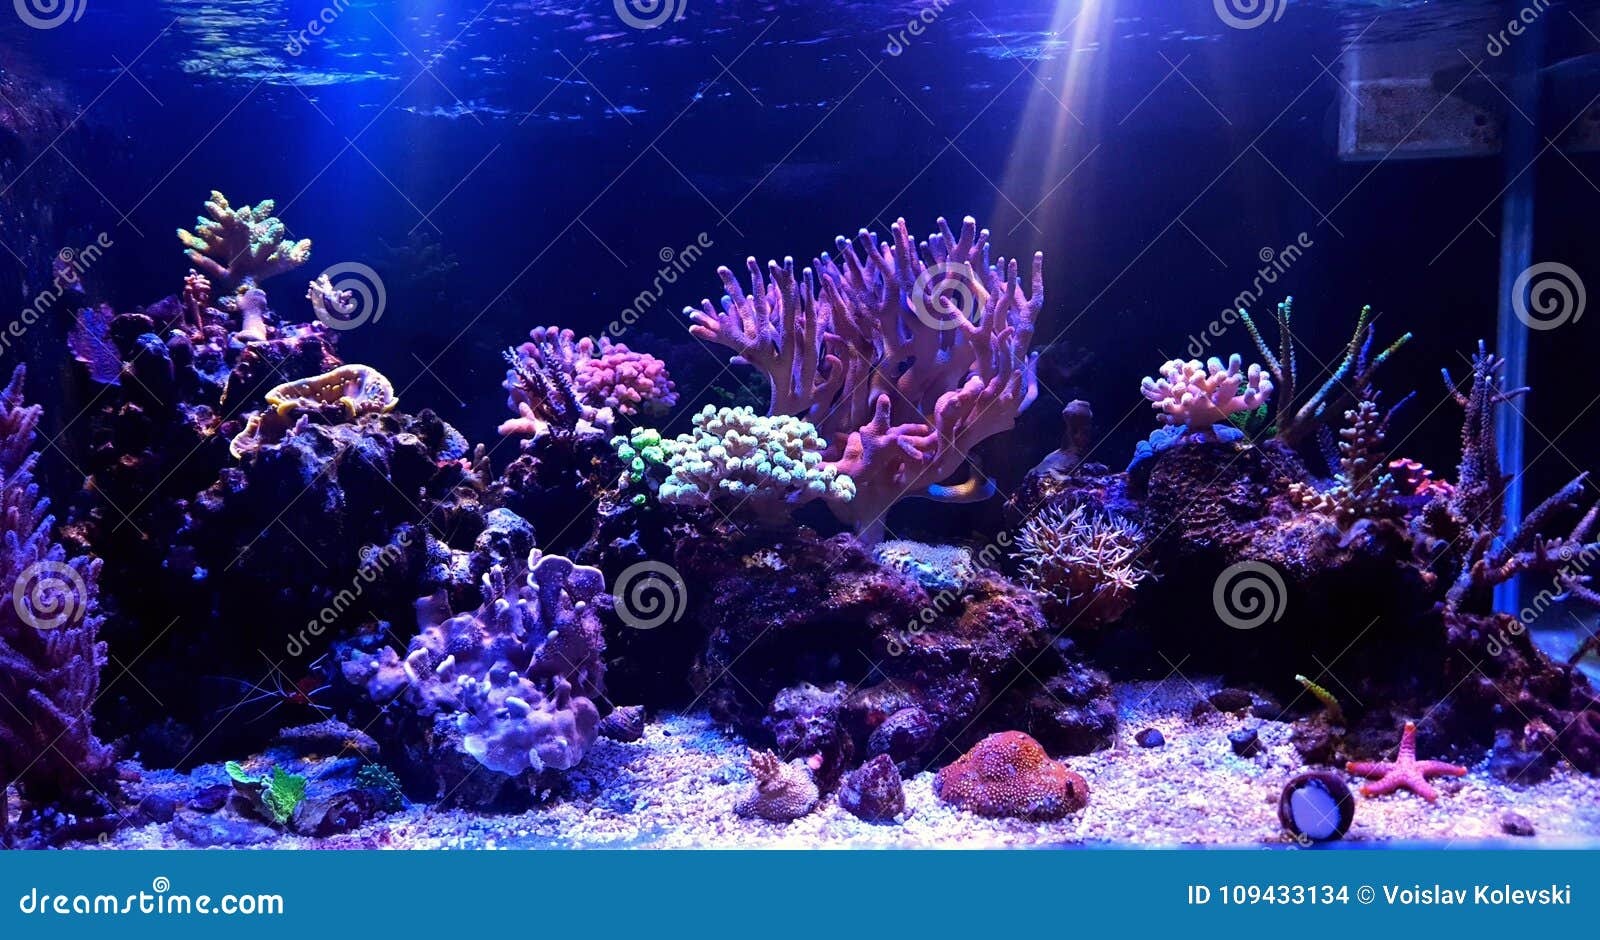 coral reef aquarium tank